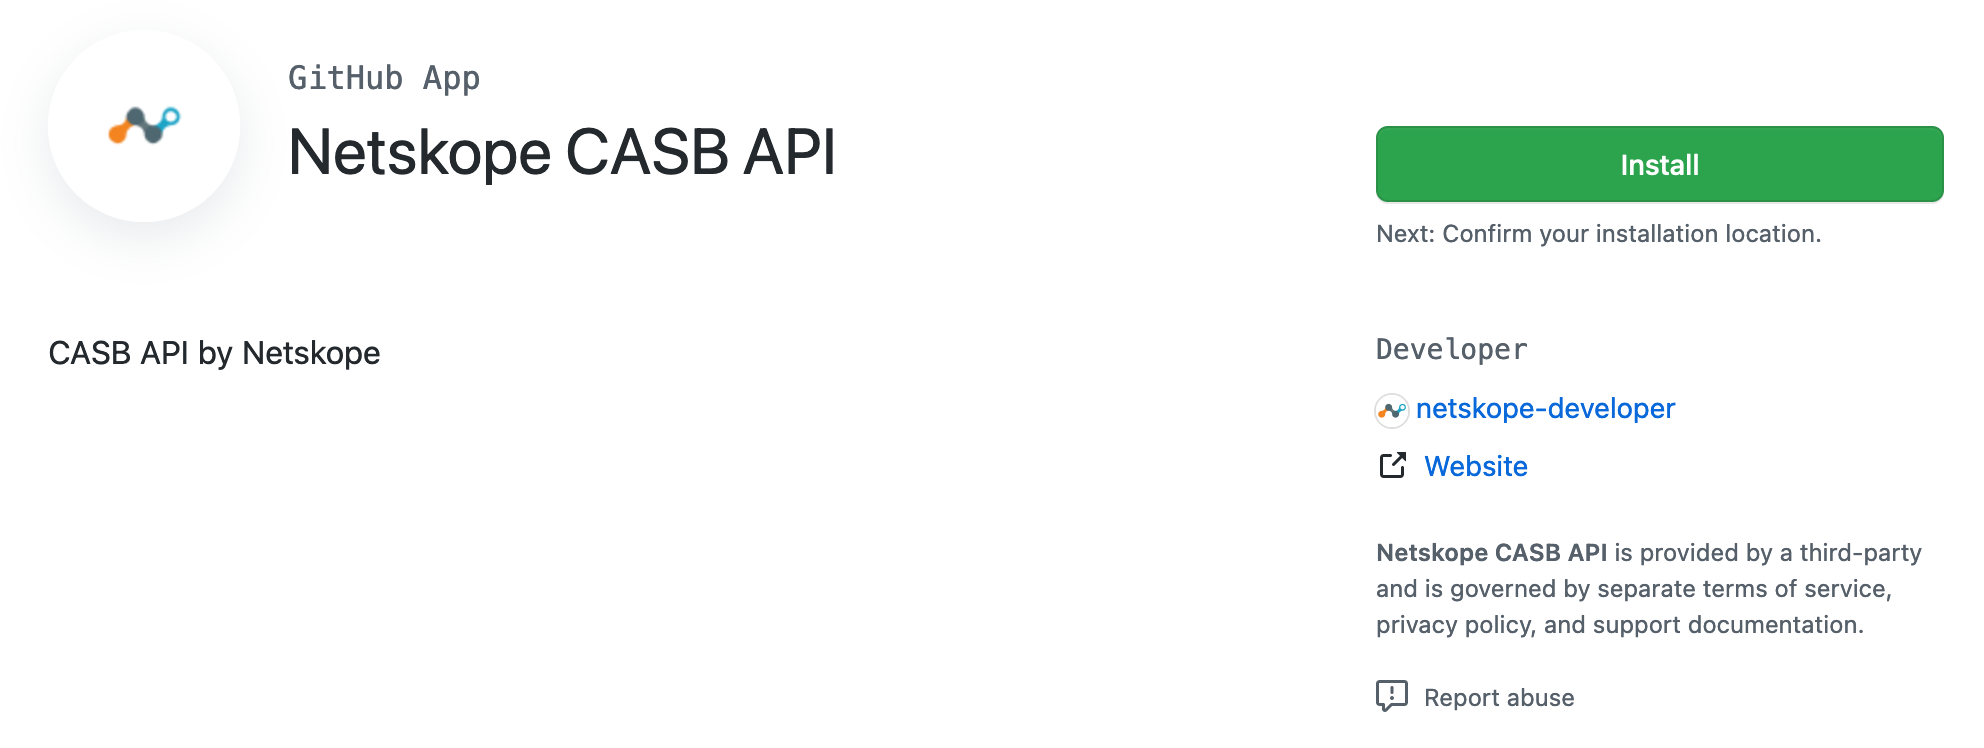 Install the Netskope CASB API App in GitHub